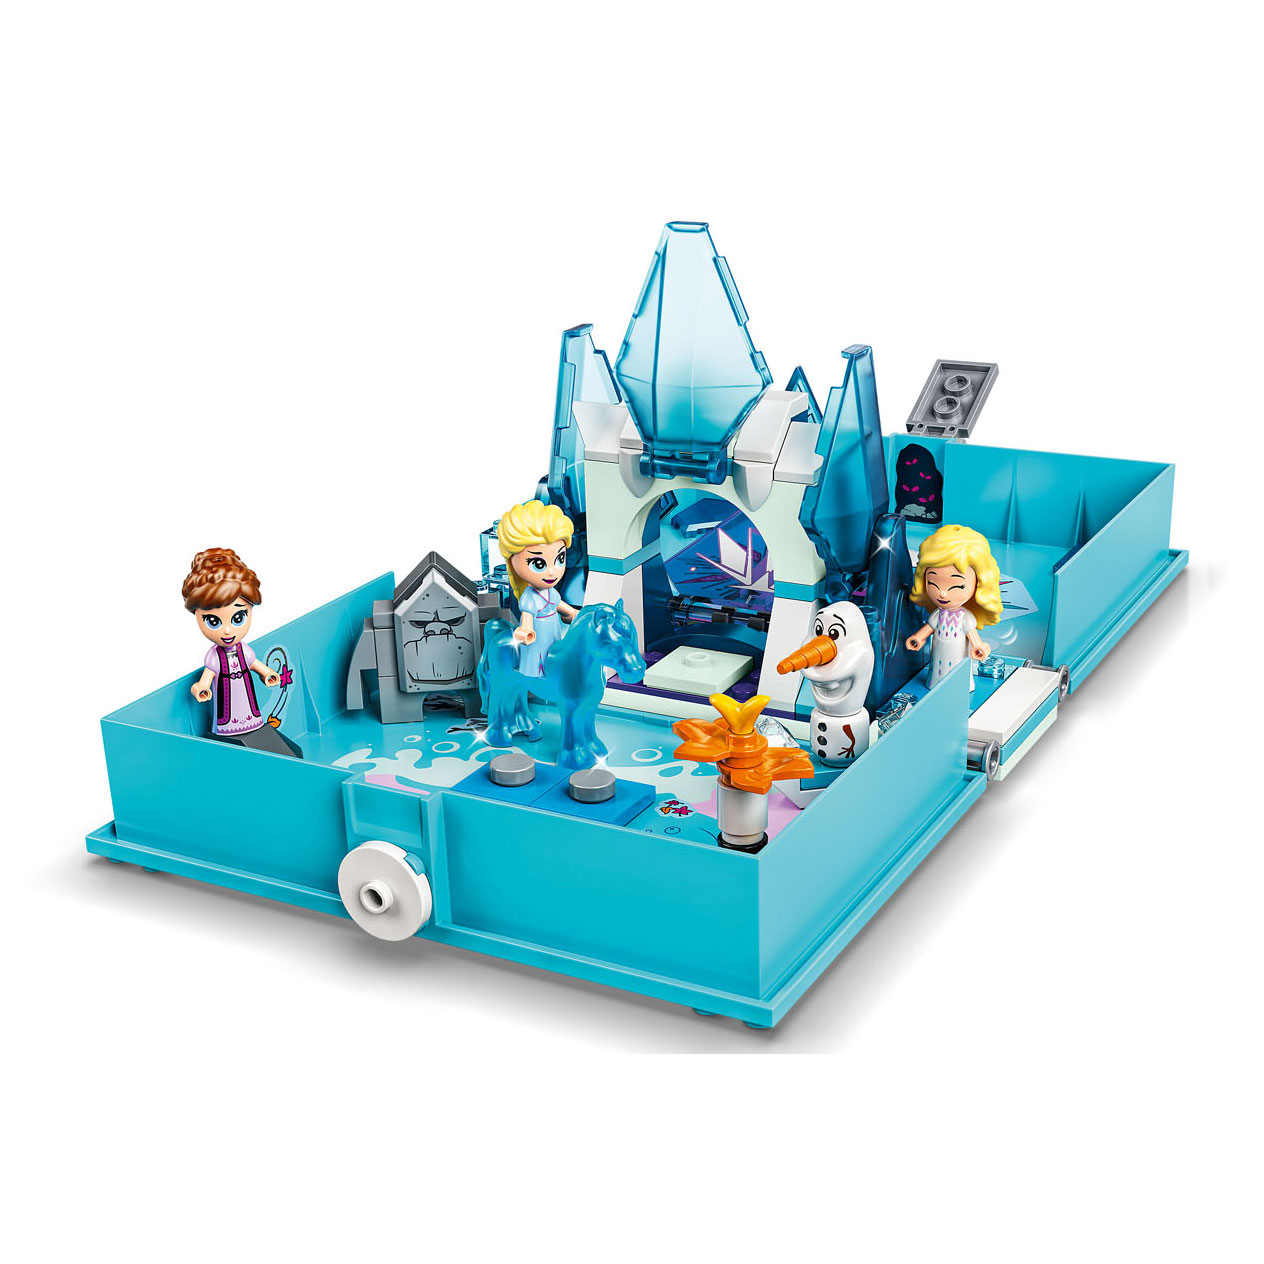 LEGO Disney Princess 43189 Elsa und die Nokk Story-Abenteuer